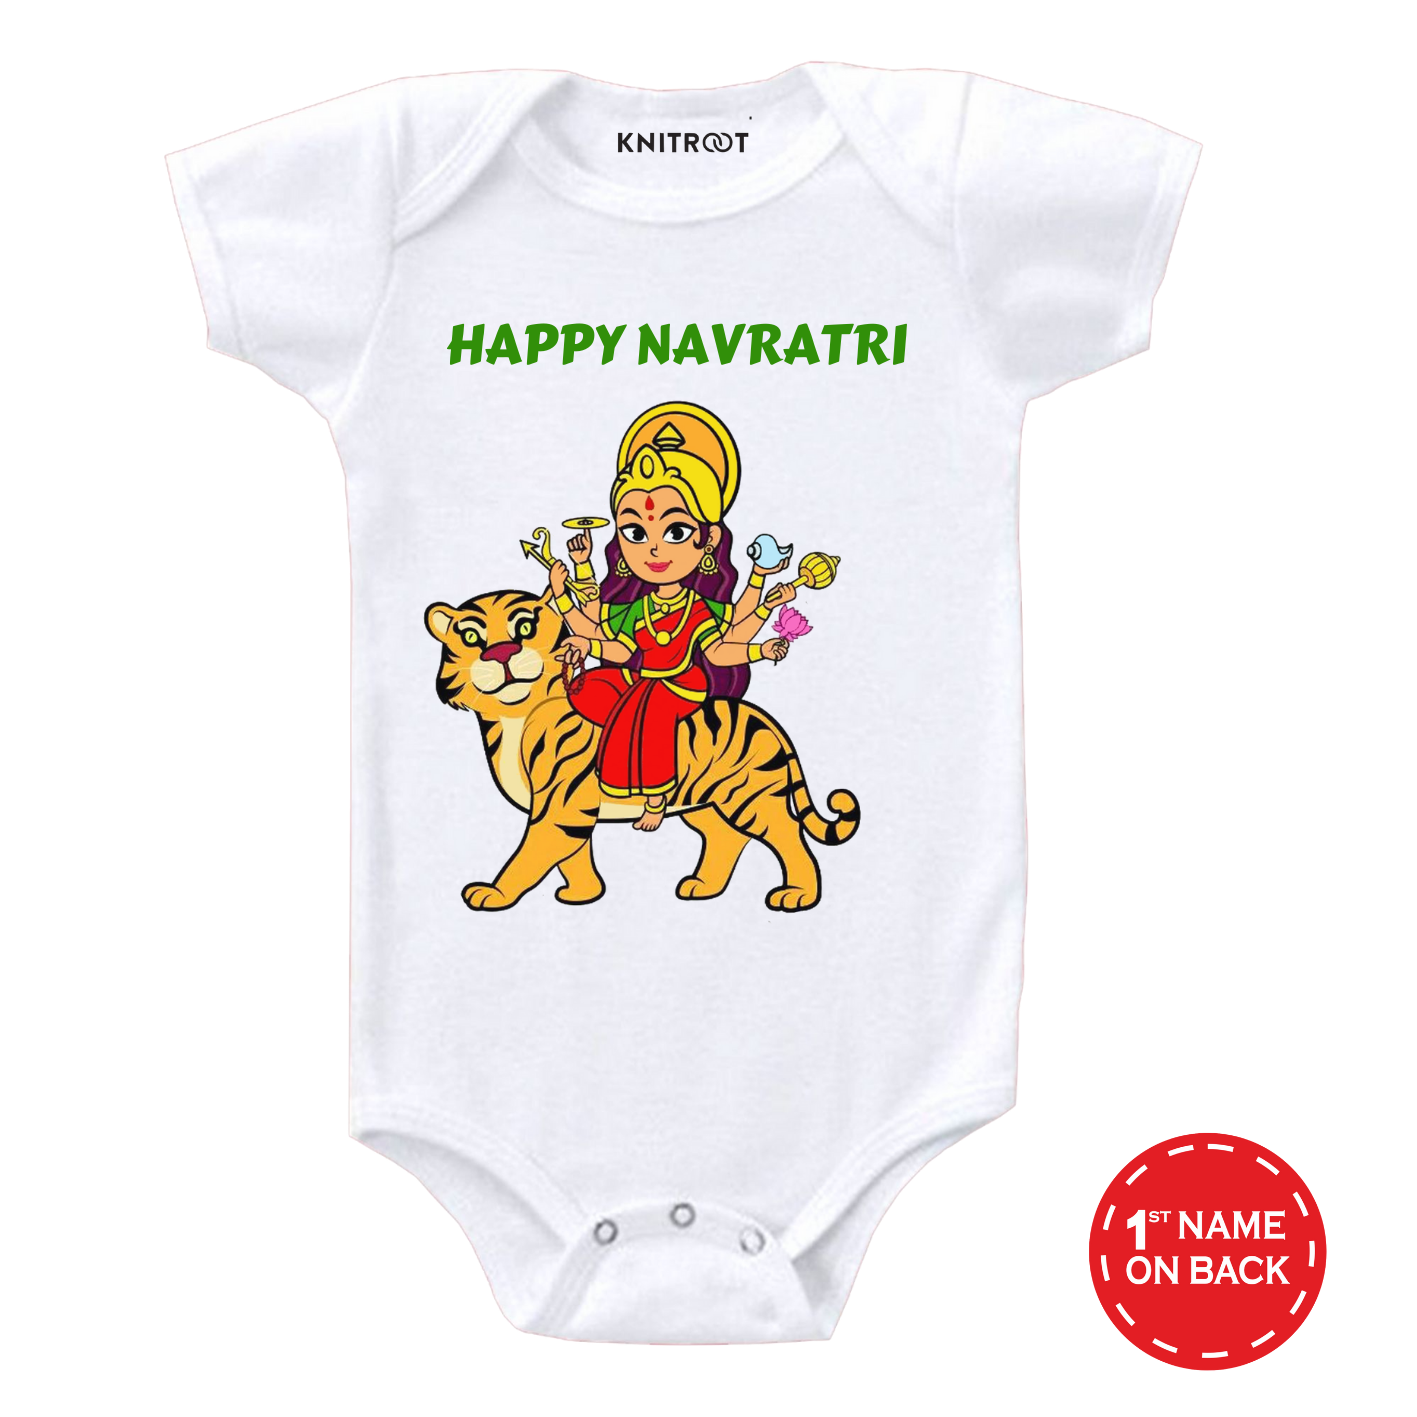 Happy Navratri